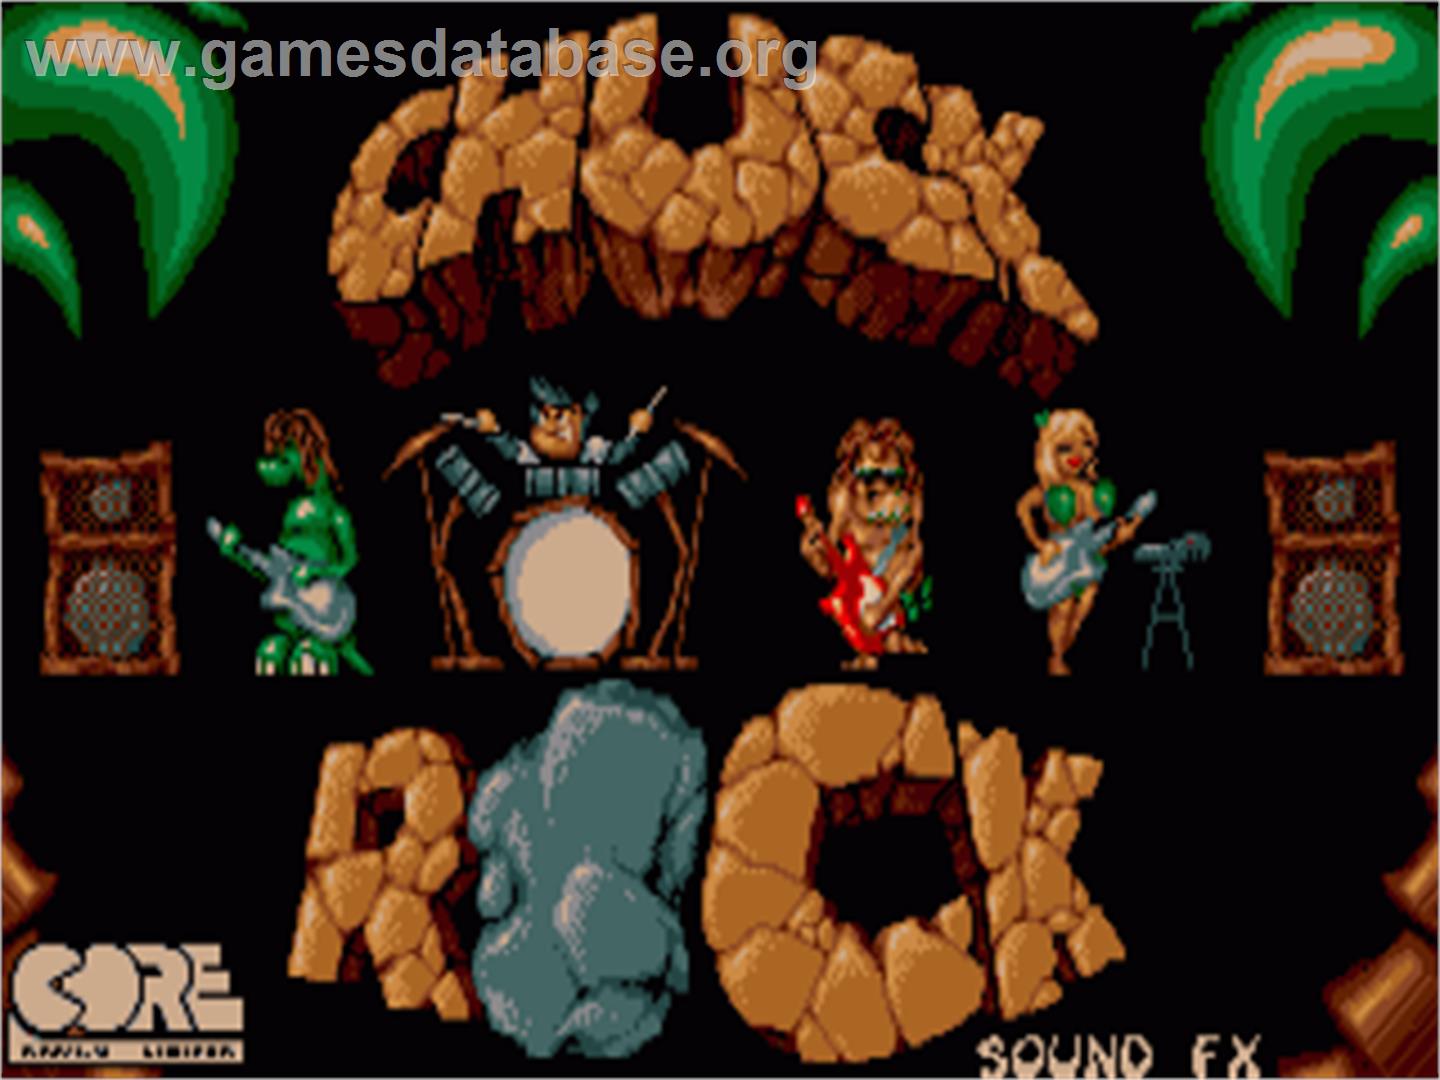 Chuck Rock - Commodore Amiga - Artwork - Title Screen